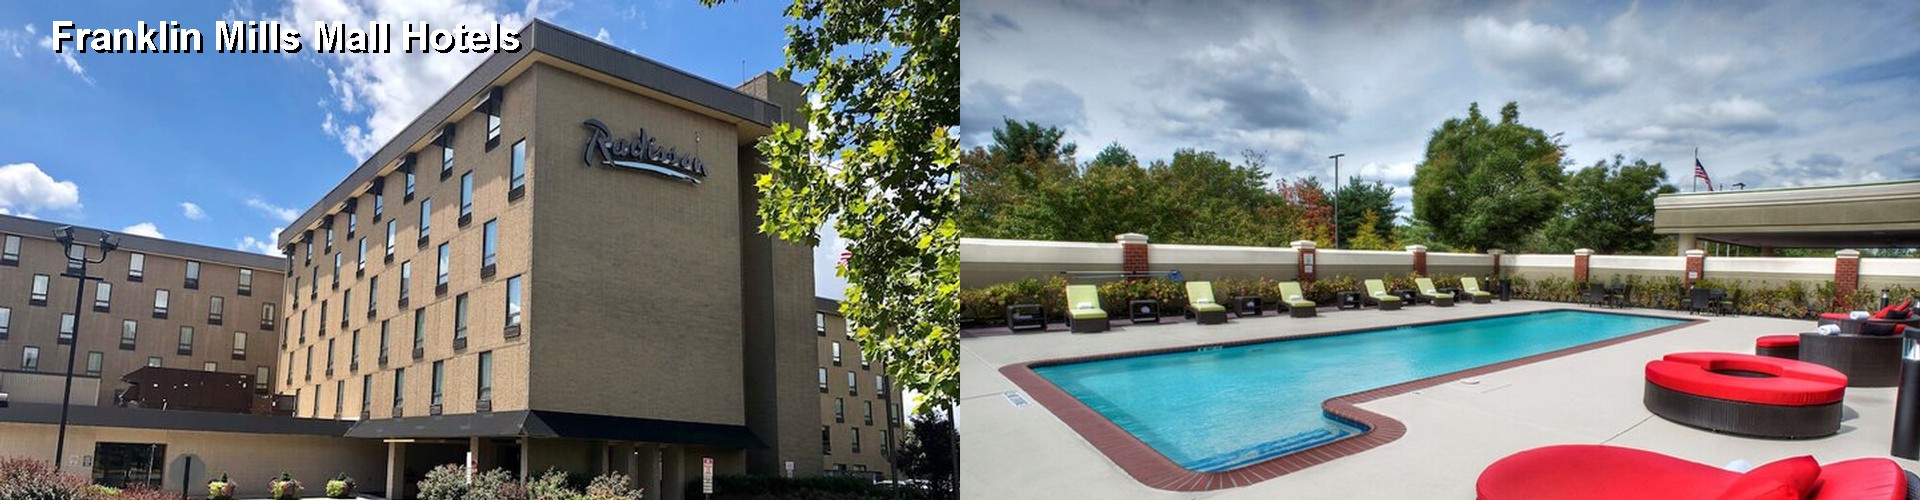 4 Best Hotels near Franklin Mills Mall